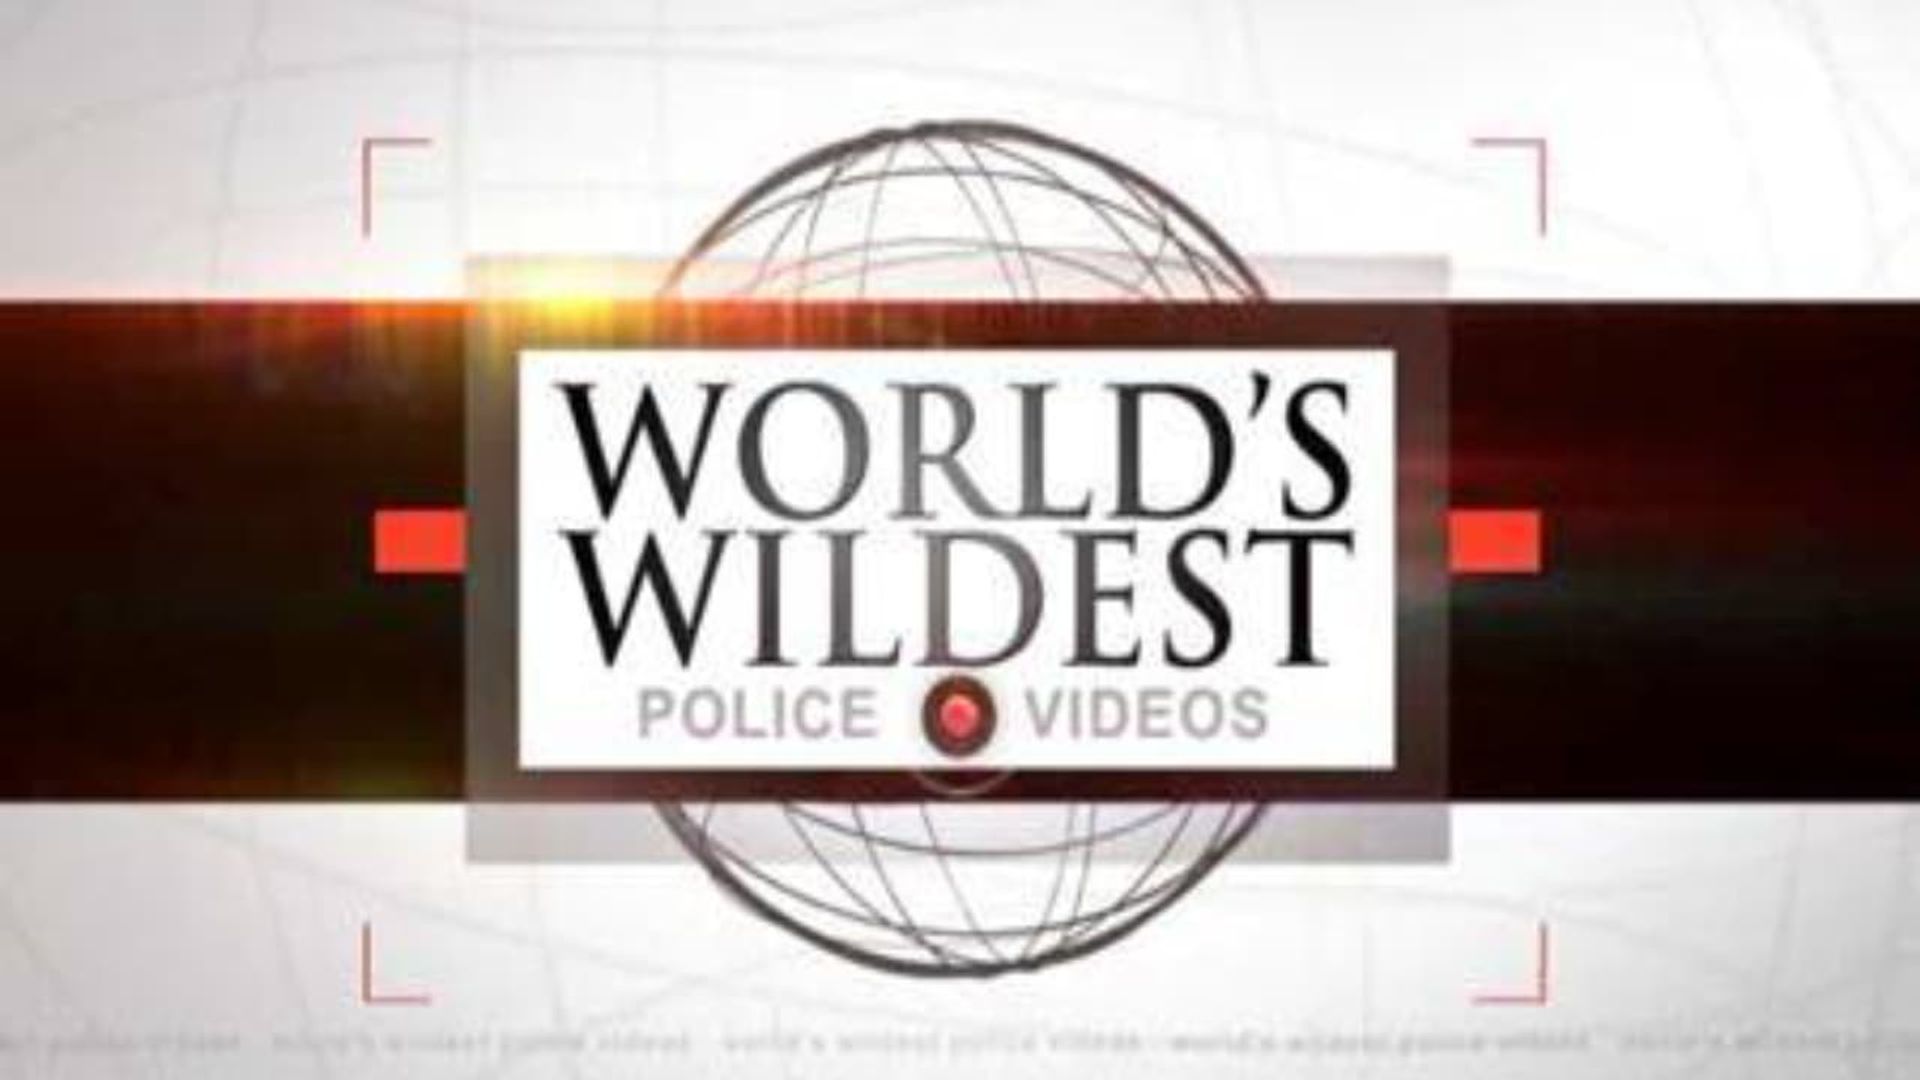 World's Wildest Police Videos background